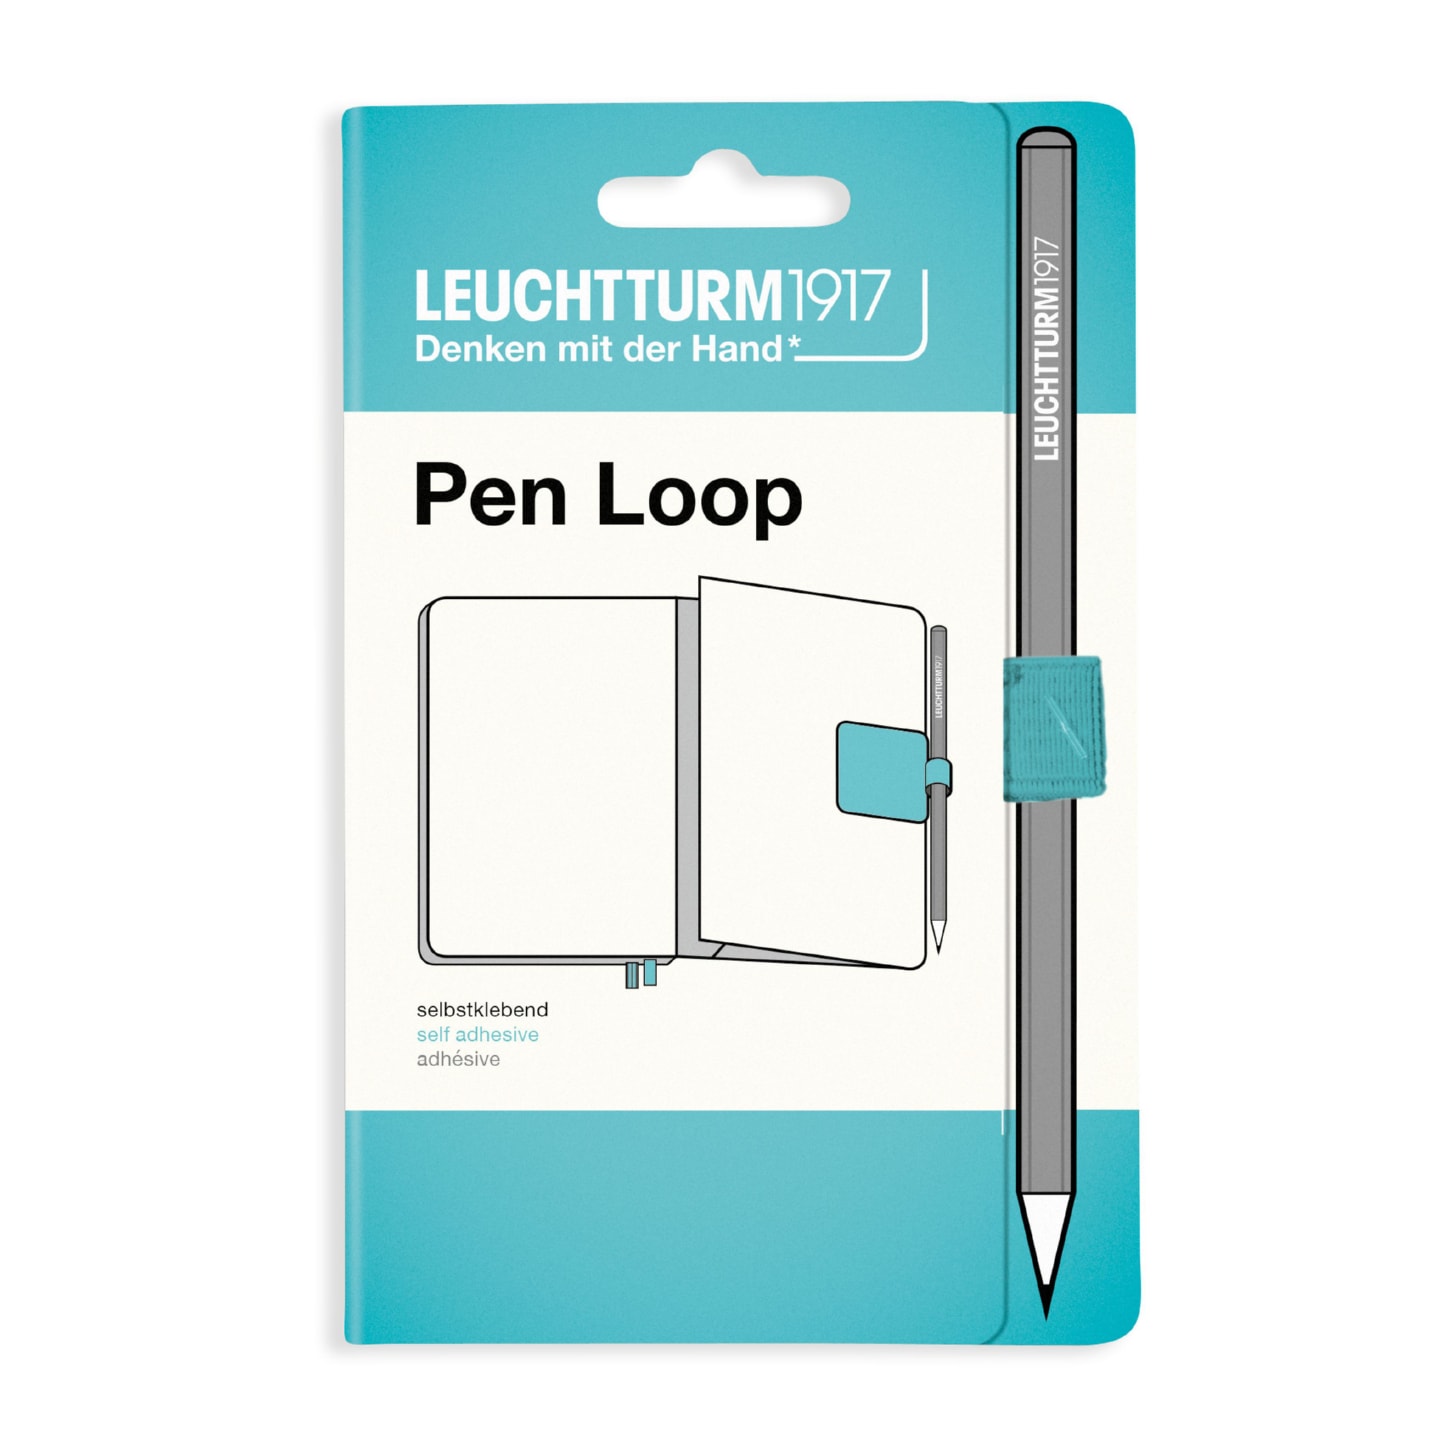 Петля самоклеящаяся Pen Loop для ручек на блокноты Leuchtturm1917 цвет Аквамарин